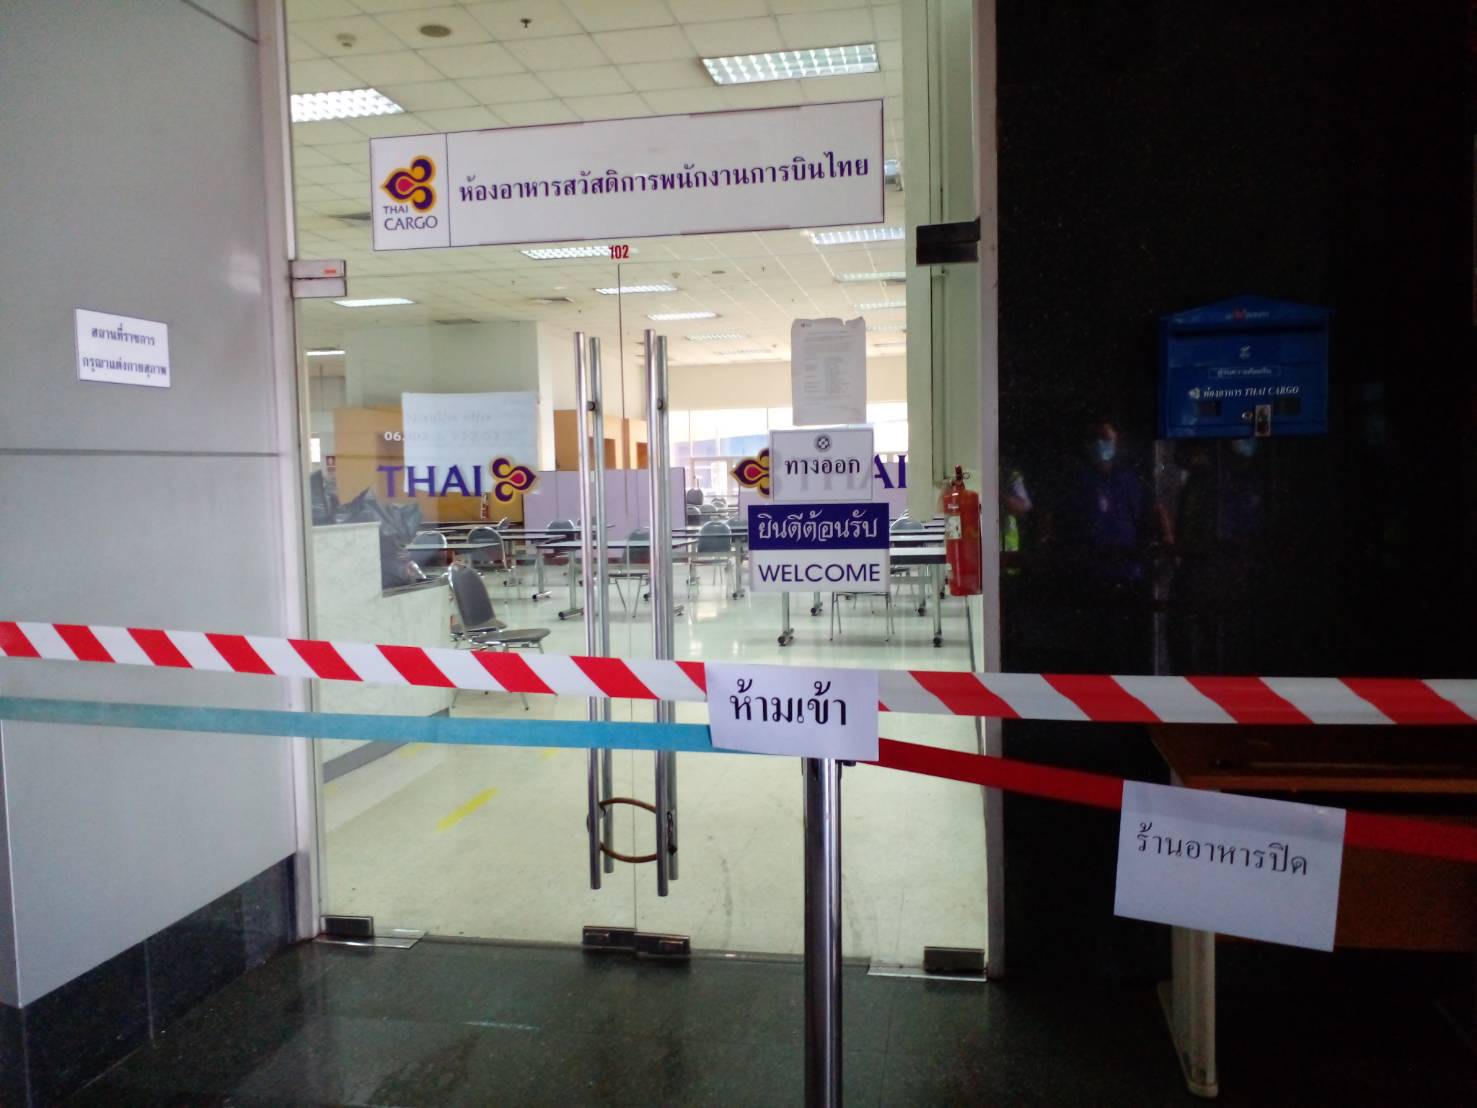 การบินไทยพบผู้ติดโควิด 6 คน ใน “แคนทีน” คลังสินค้าสุวรรณภูมิ – ท่องเที่ยว